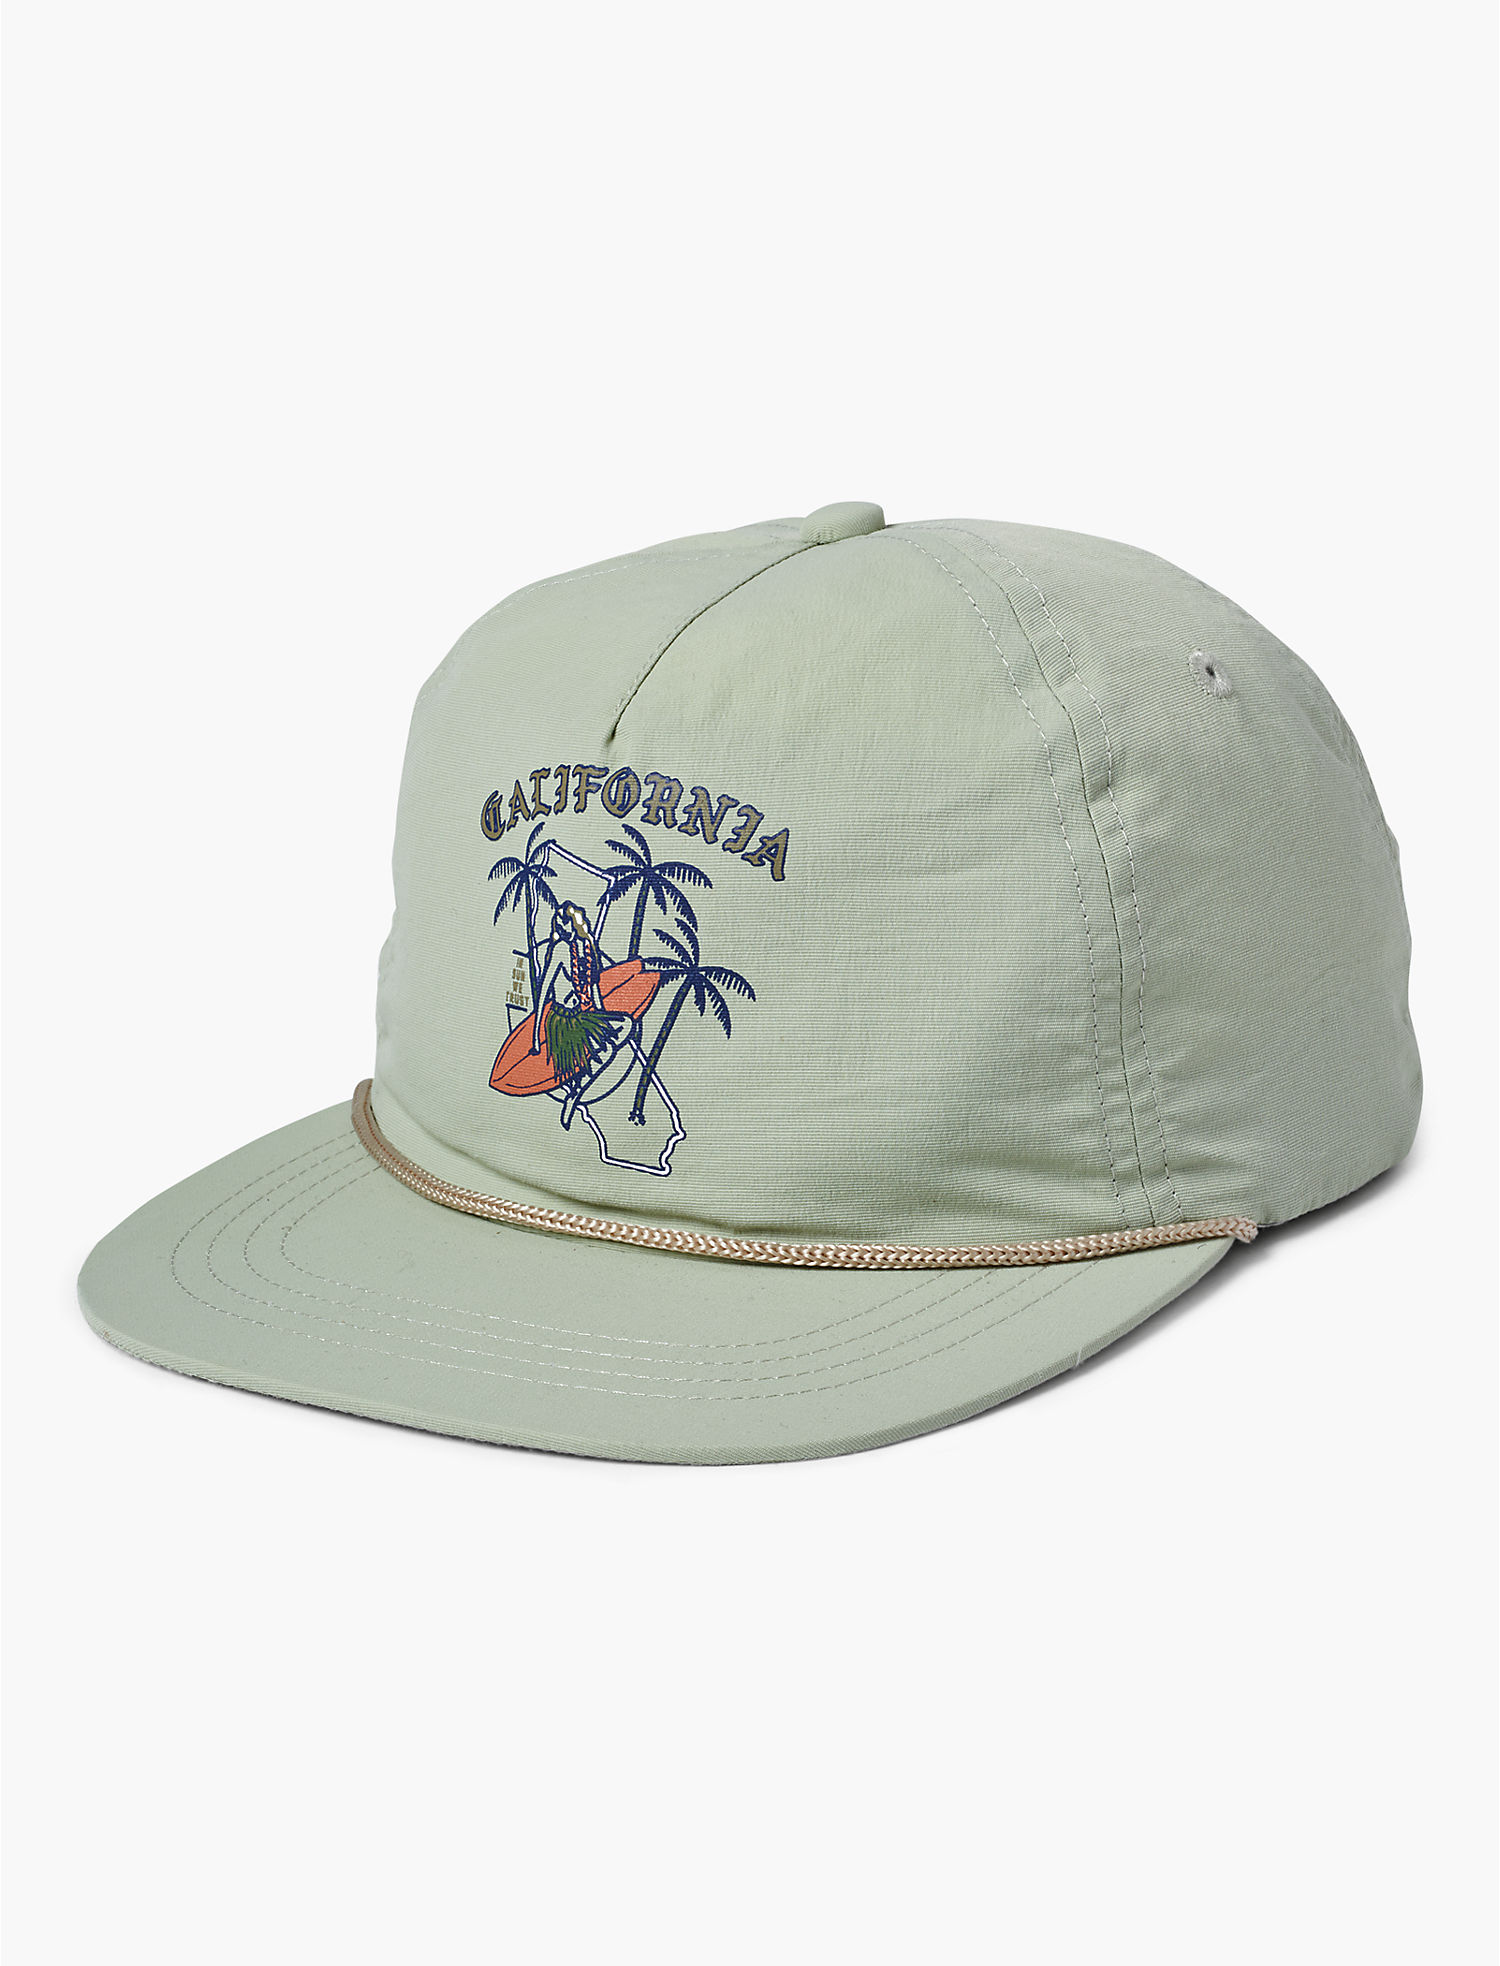 Lucky BRAND California Nylon Hat MINT for sale online | eBay